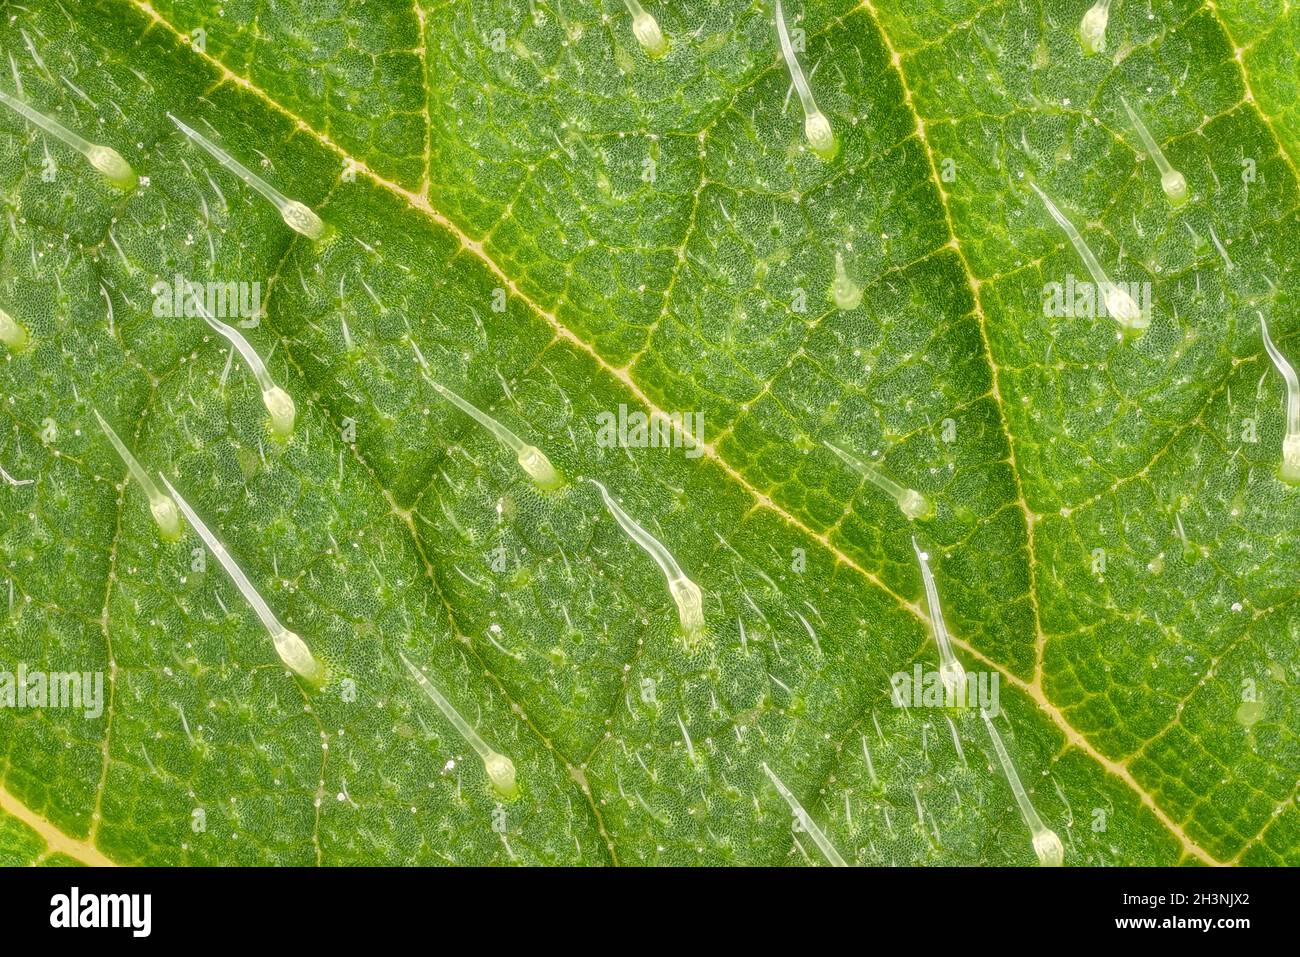 Brennnessel - Urtica dioica - Blatt, Mikroskop Detail, transparente Stachelhaare genannt Trichome sichtbar, Bildbreite 9mm Stockfoto